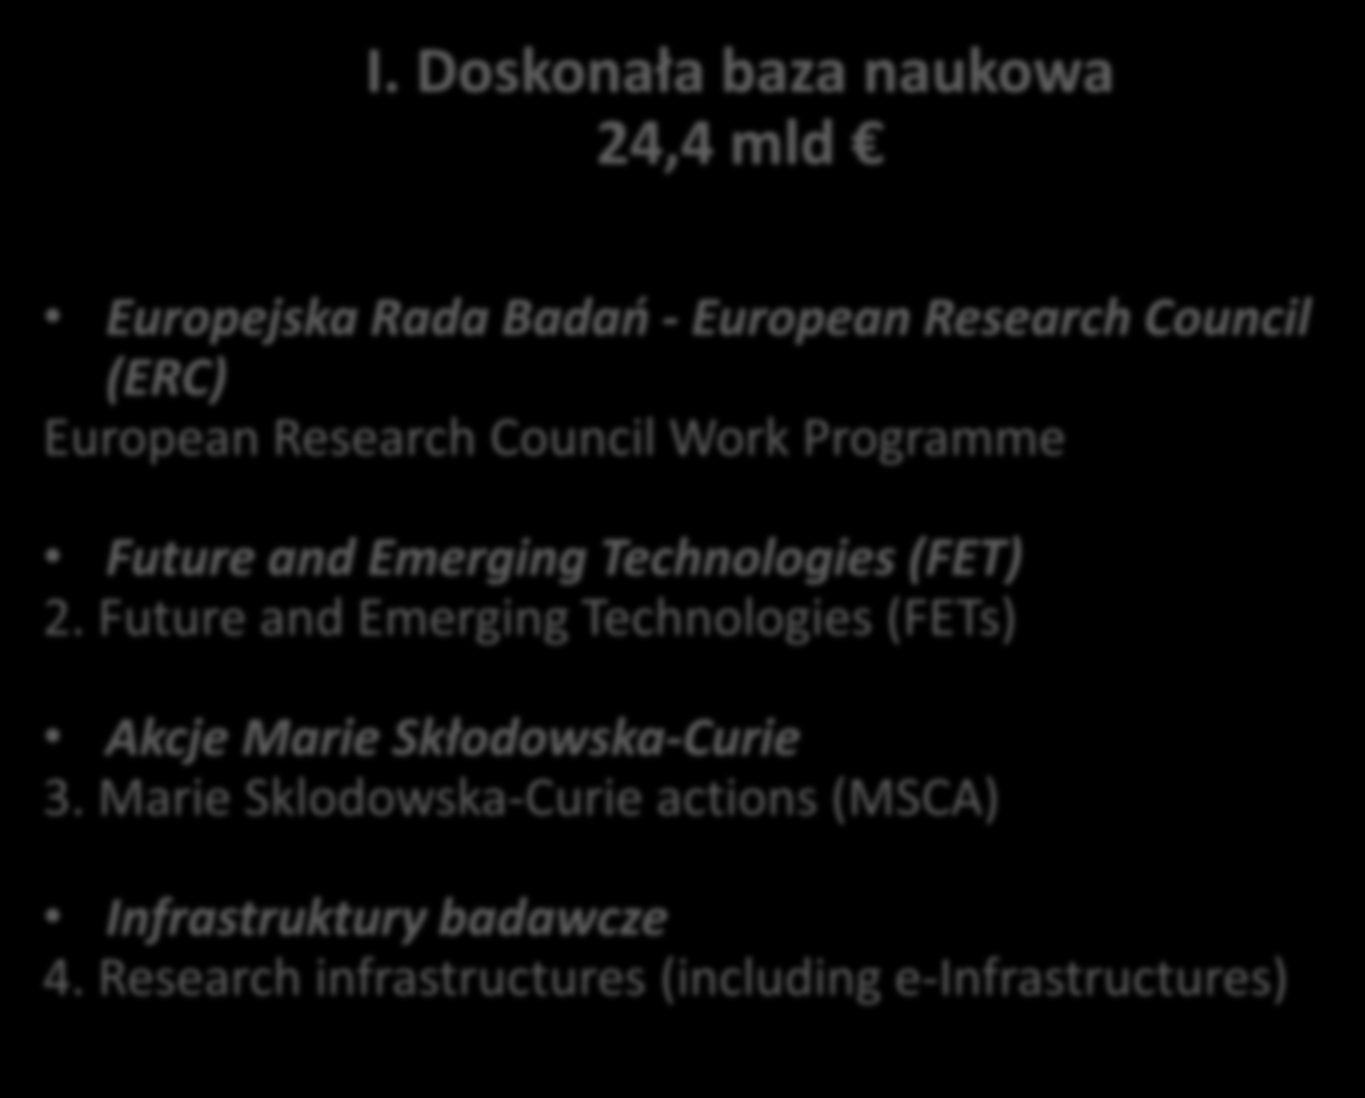 Marie Sklodowska-Curie actions (MSCA) Konkursy dla konsorcjów naukowych o dowolnym temacie (open), długoterminowych (flagships), o zadanym temacie (proactive) Granty